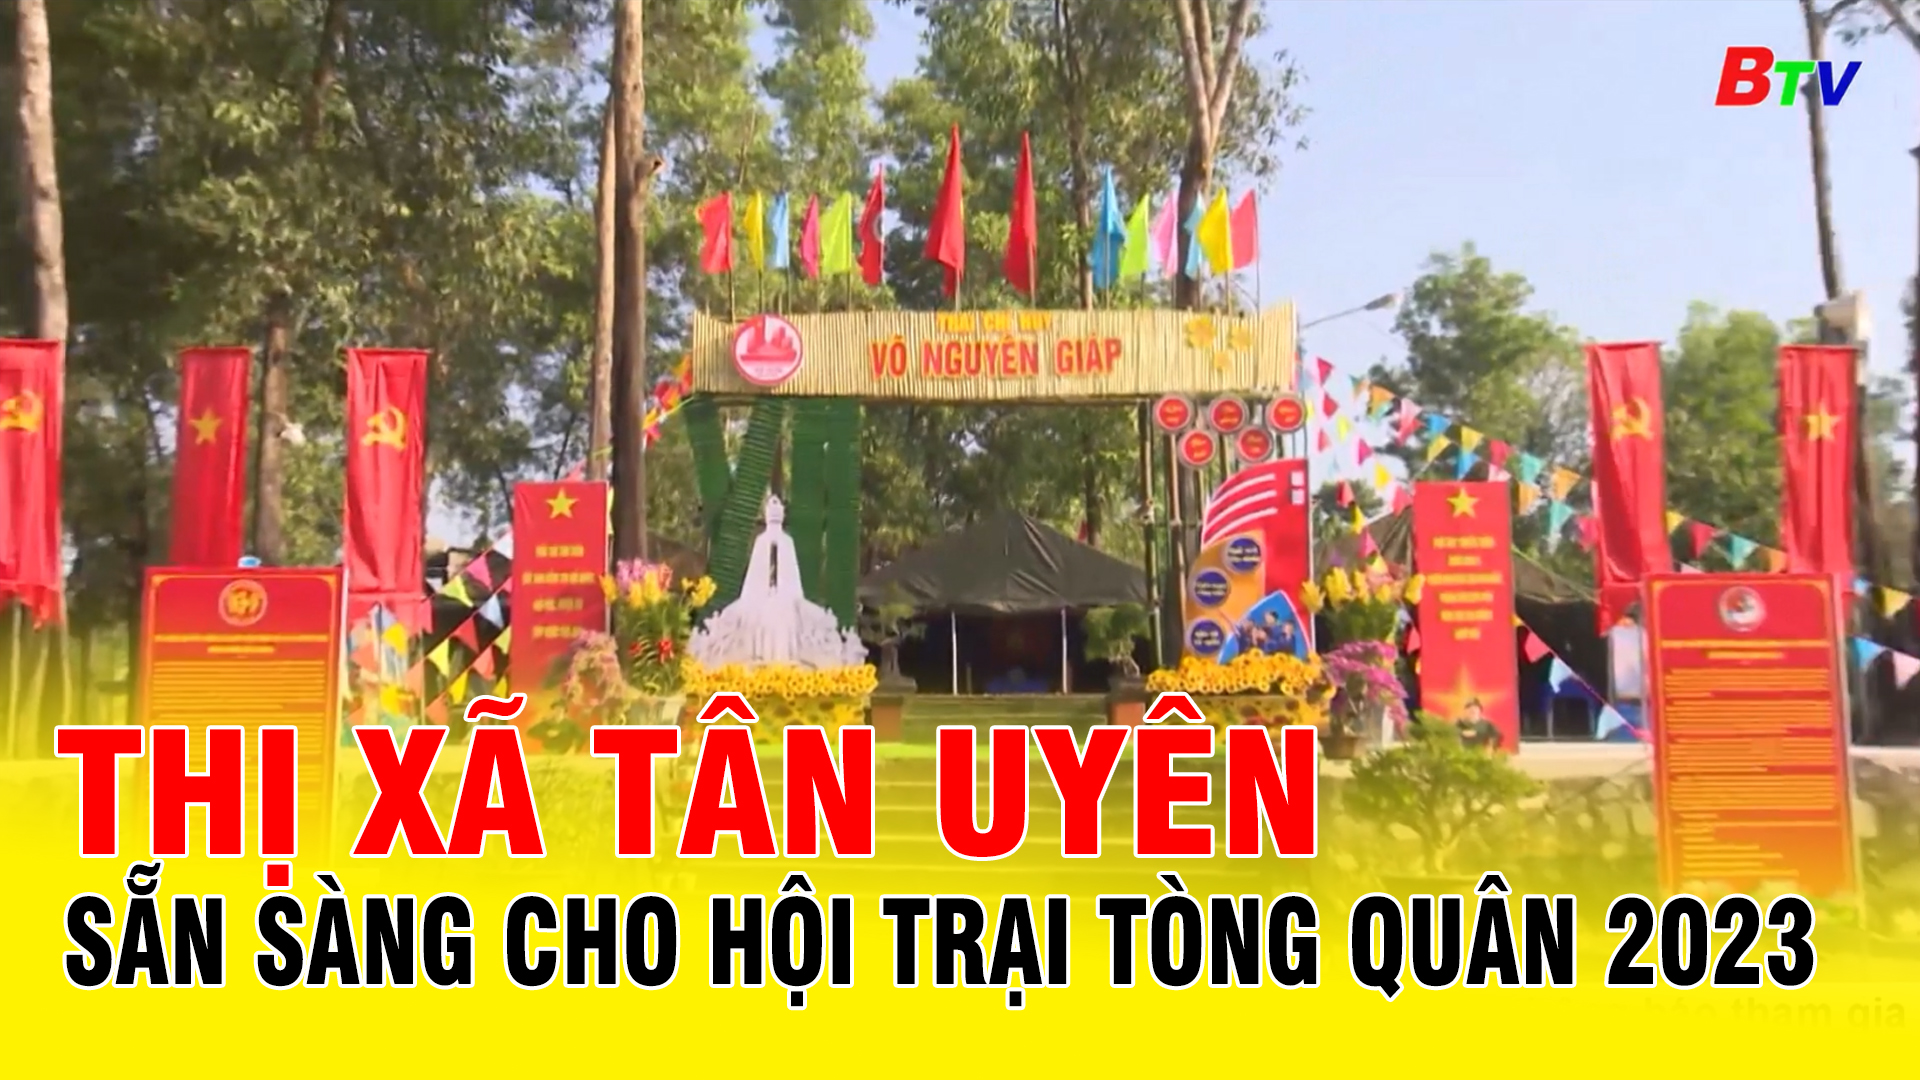 Thị xã Tân Uyên sẵn sàng cho hội trại tòng quân 2023